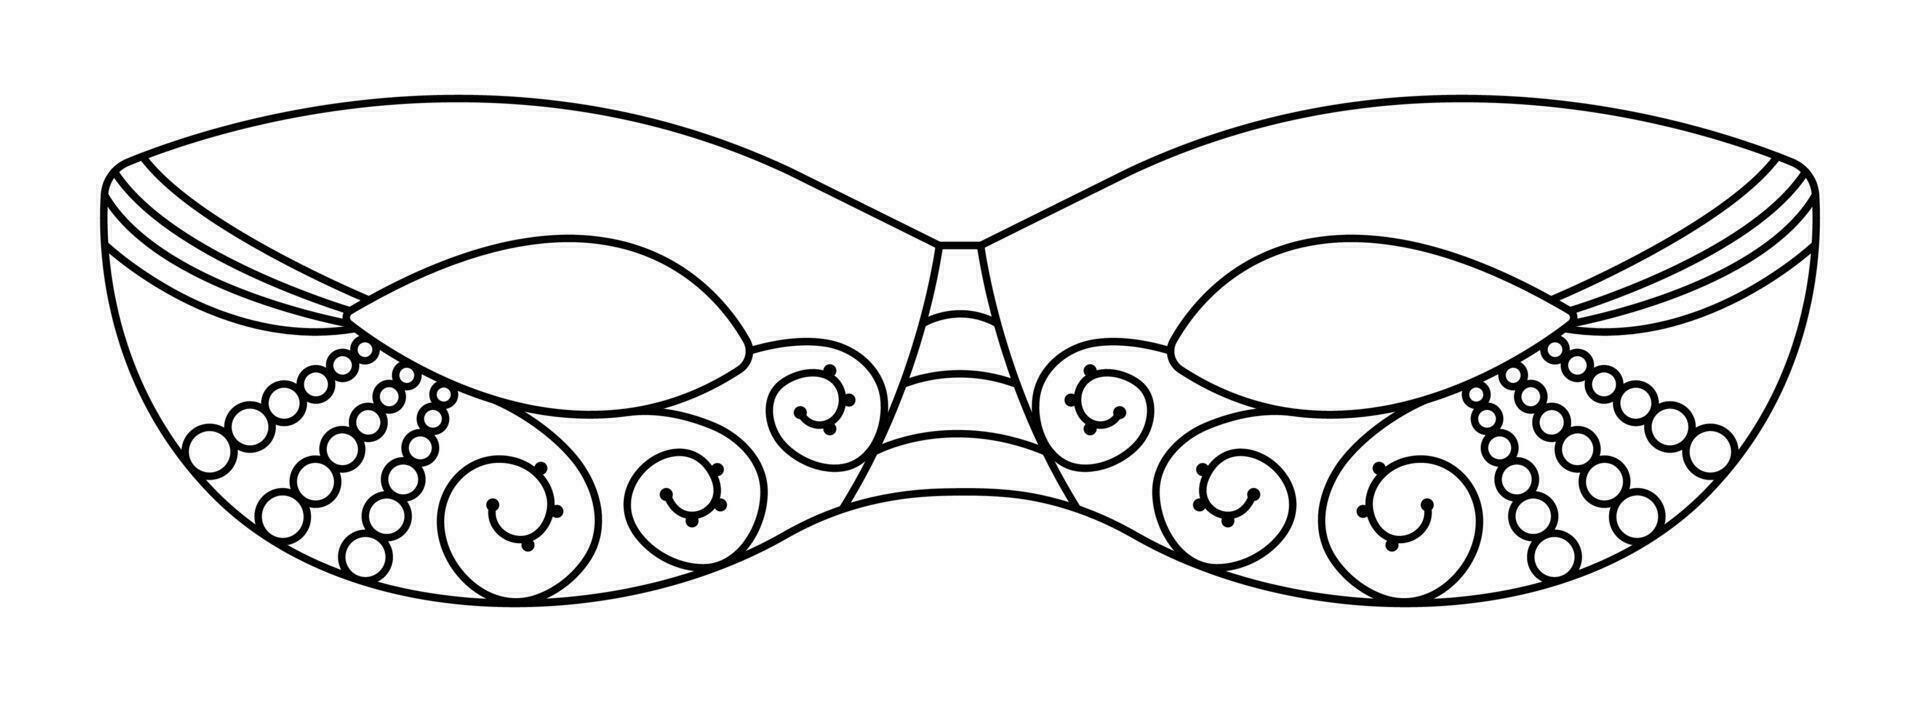 zwart lijn maskerade masker met kralen en veter, vector illustratie voor mardi gras